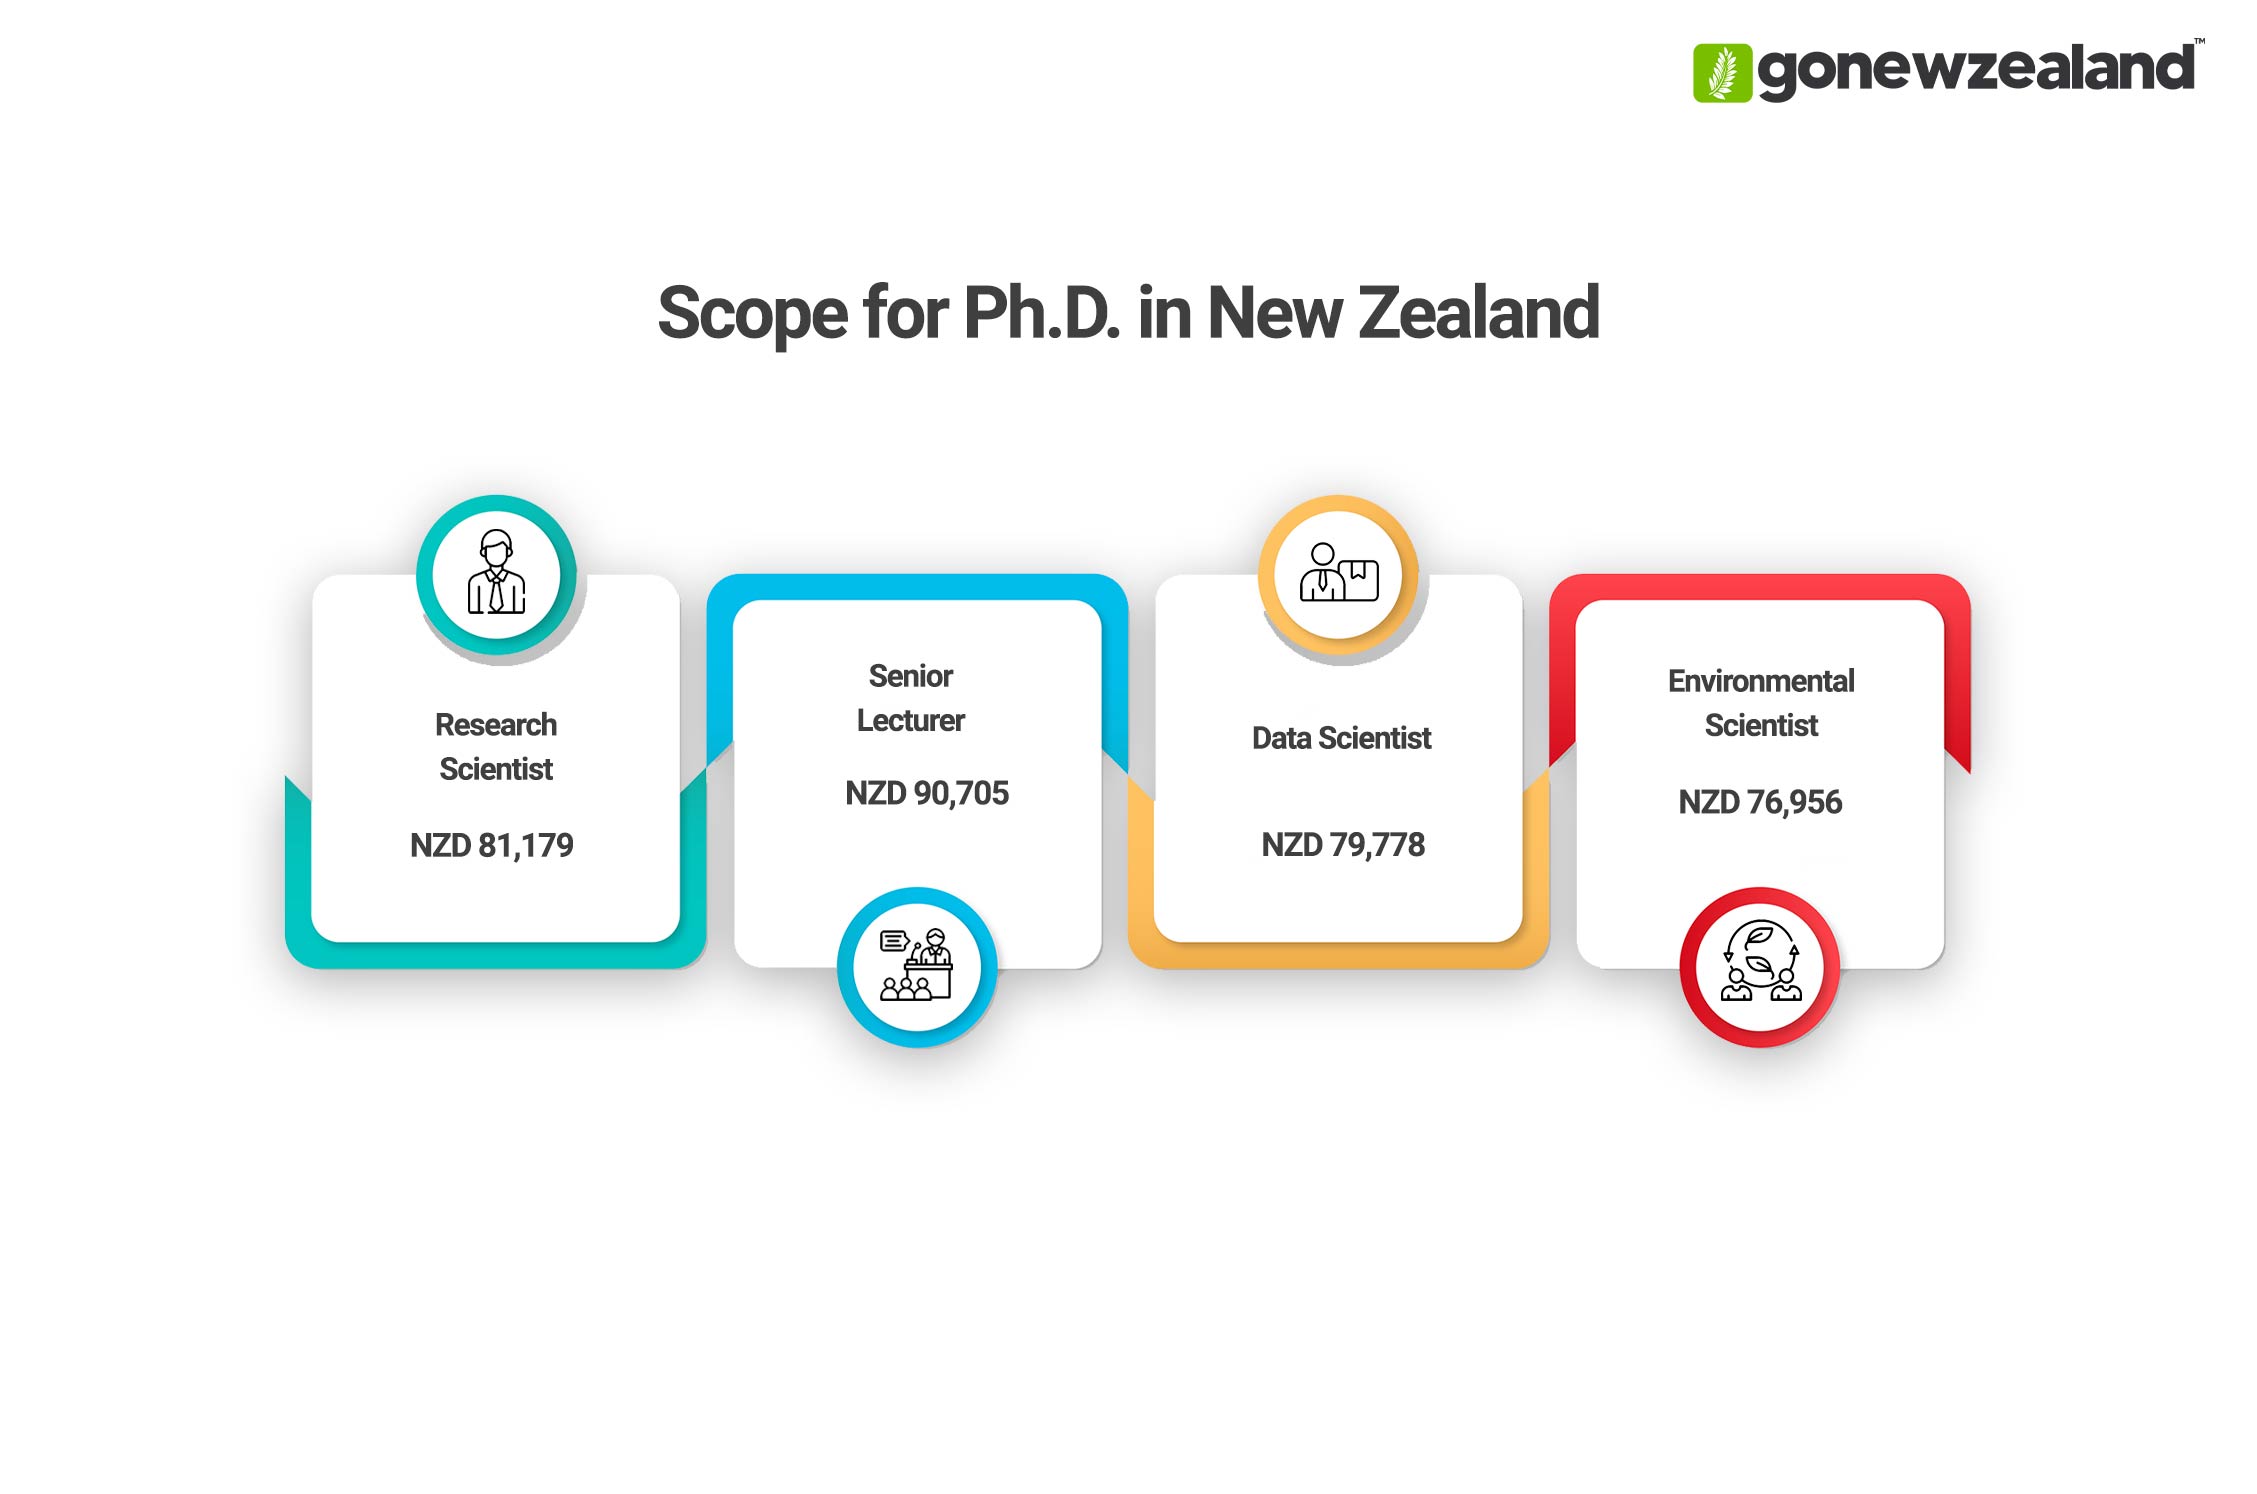 PhD in New Zealand Scope